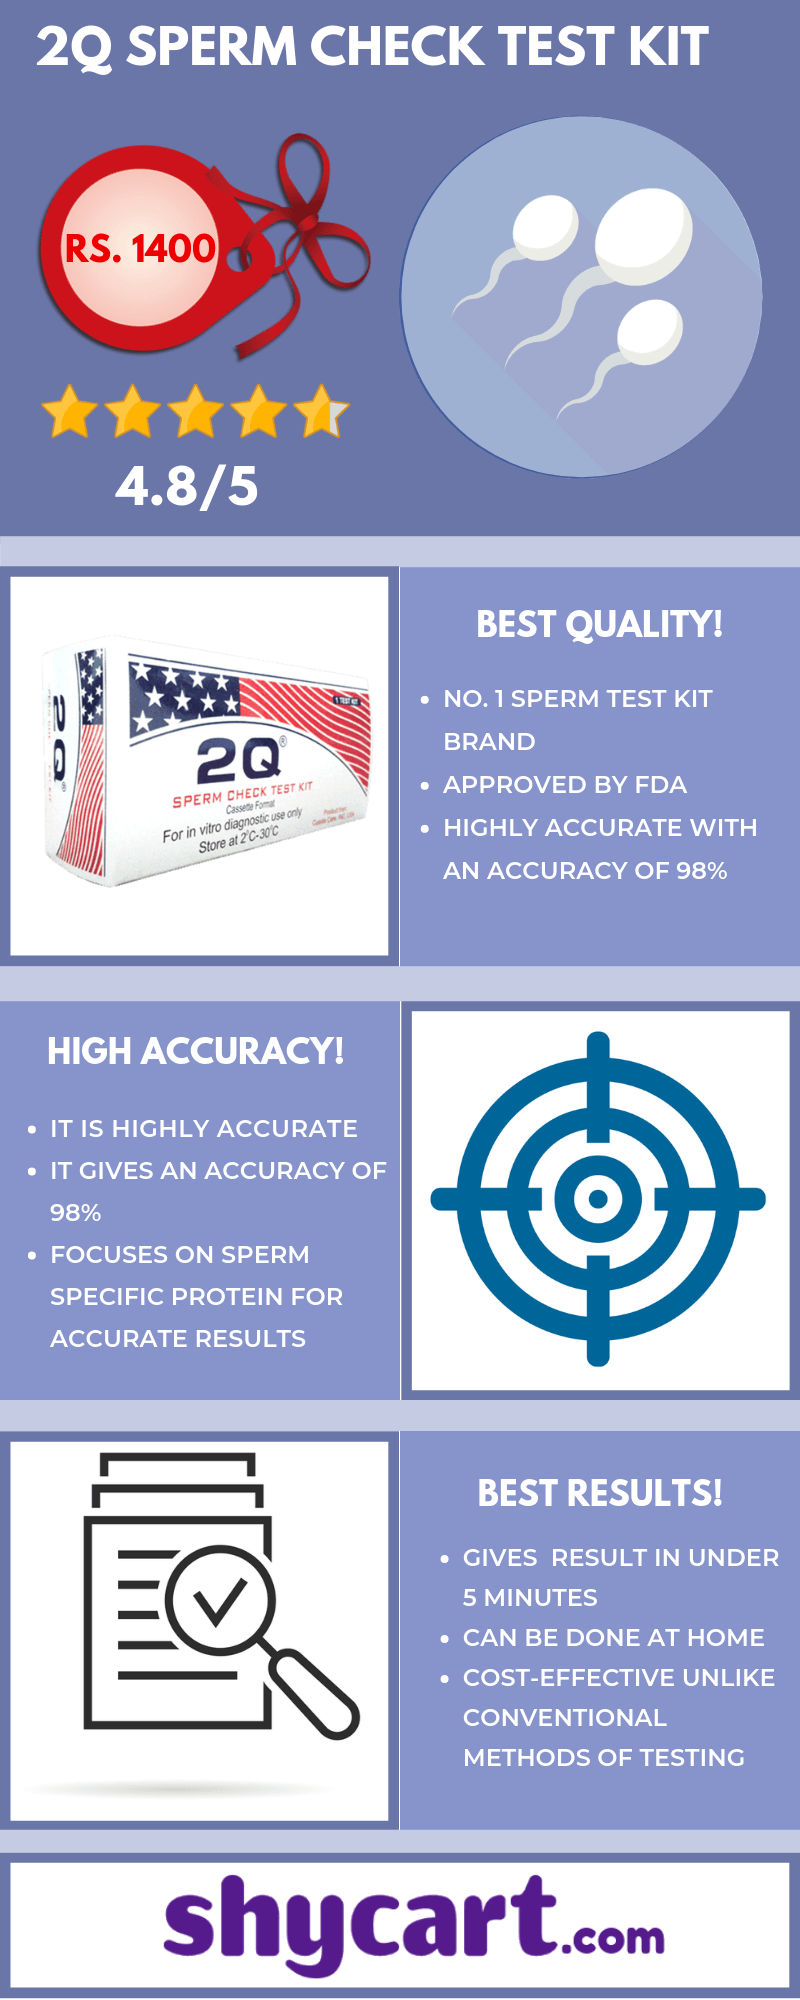 2Q sperm check test kits - Infographic